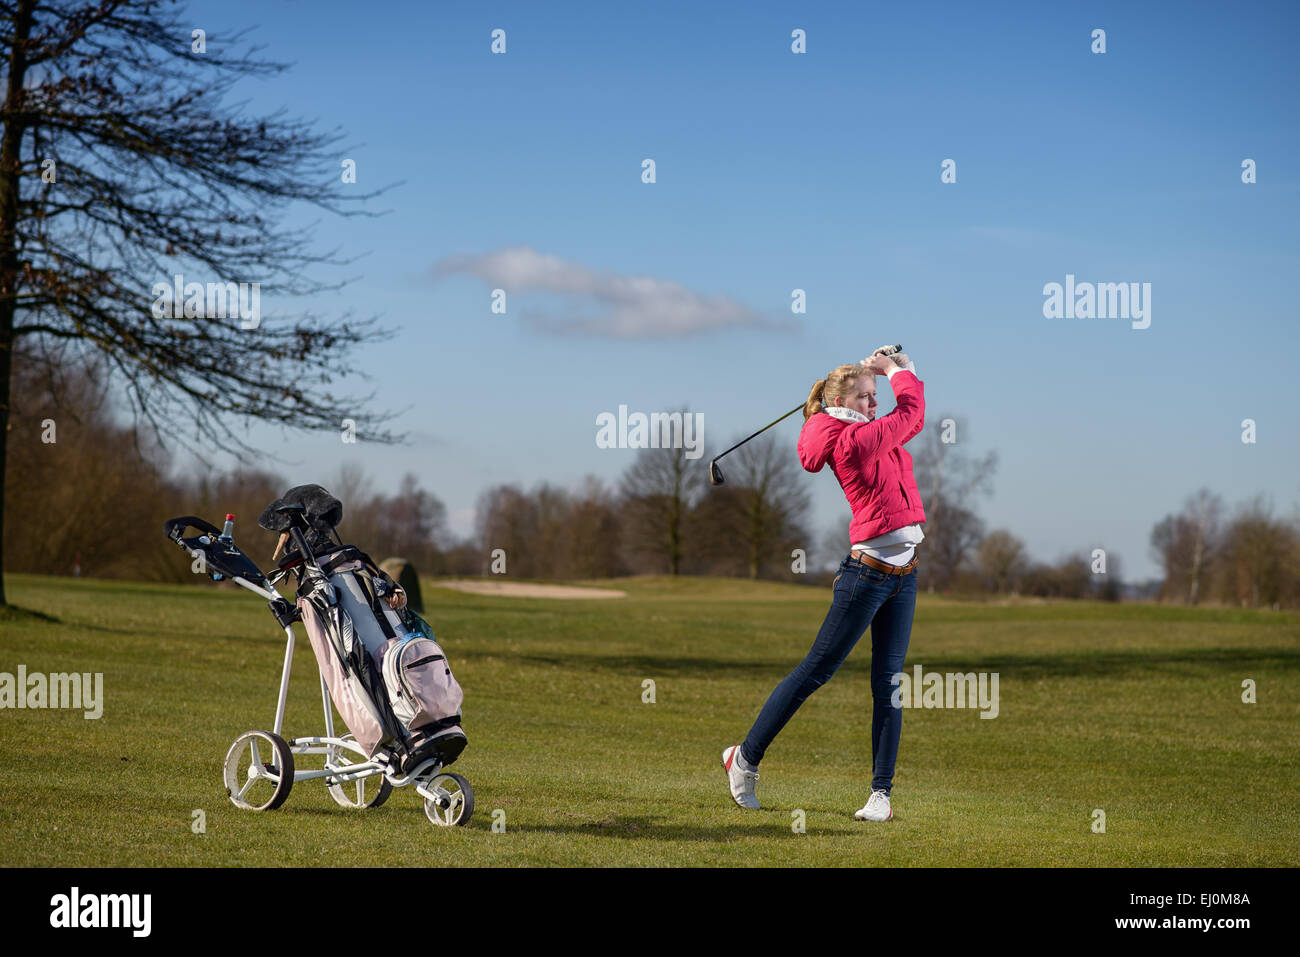 Attraente snello giovane donna golfista giocando un approccio shot sul fairway guardando il volo della sua palla dopo la corsa Foto Stock